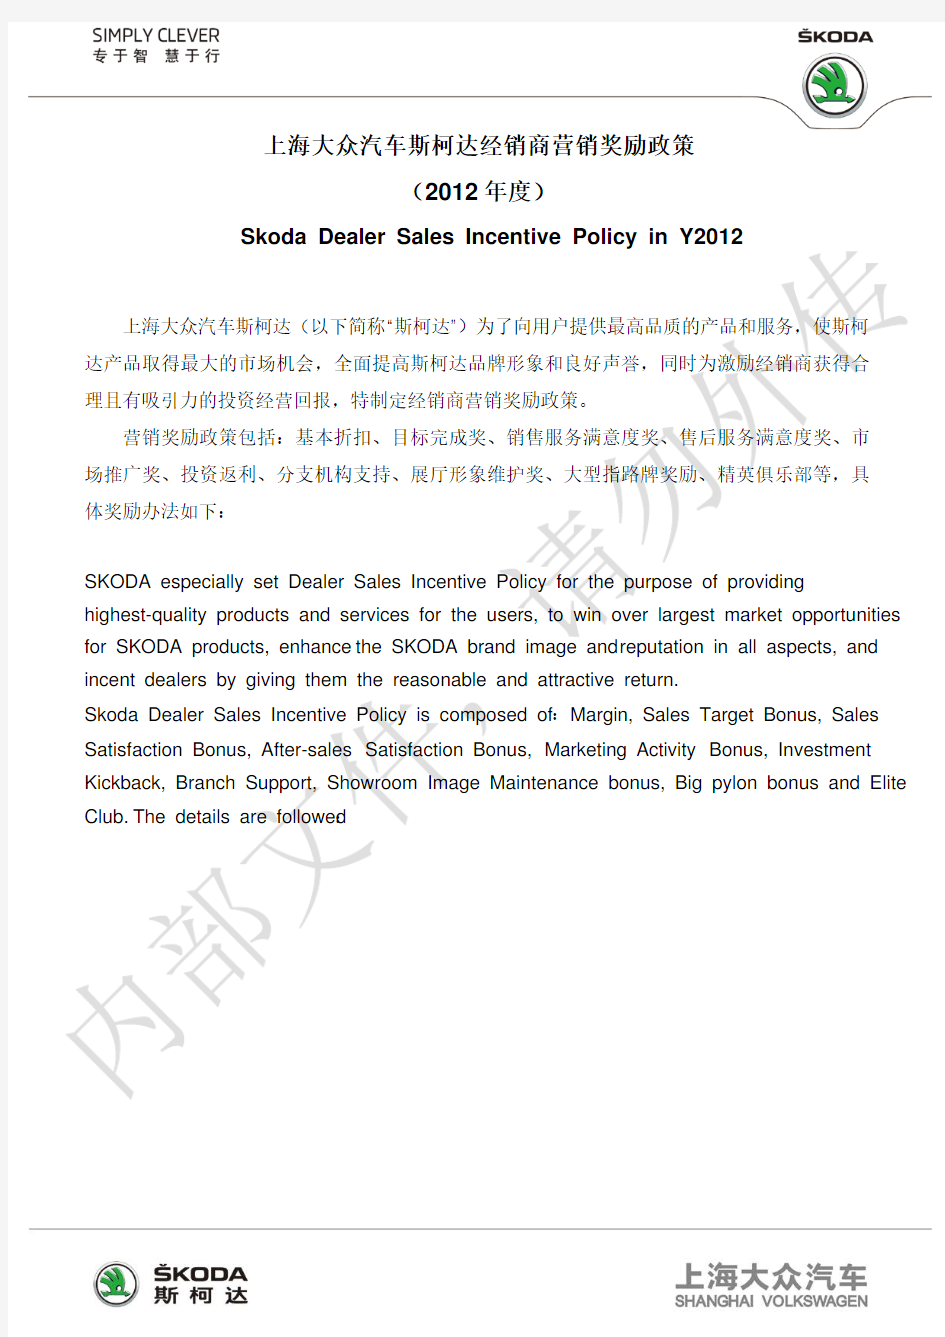 2012年度上海大众汽车斯柯达经销商营销奖励政策